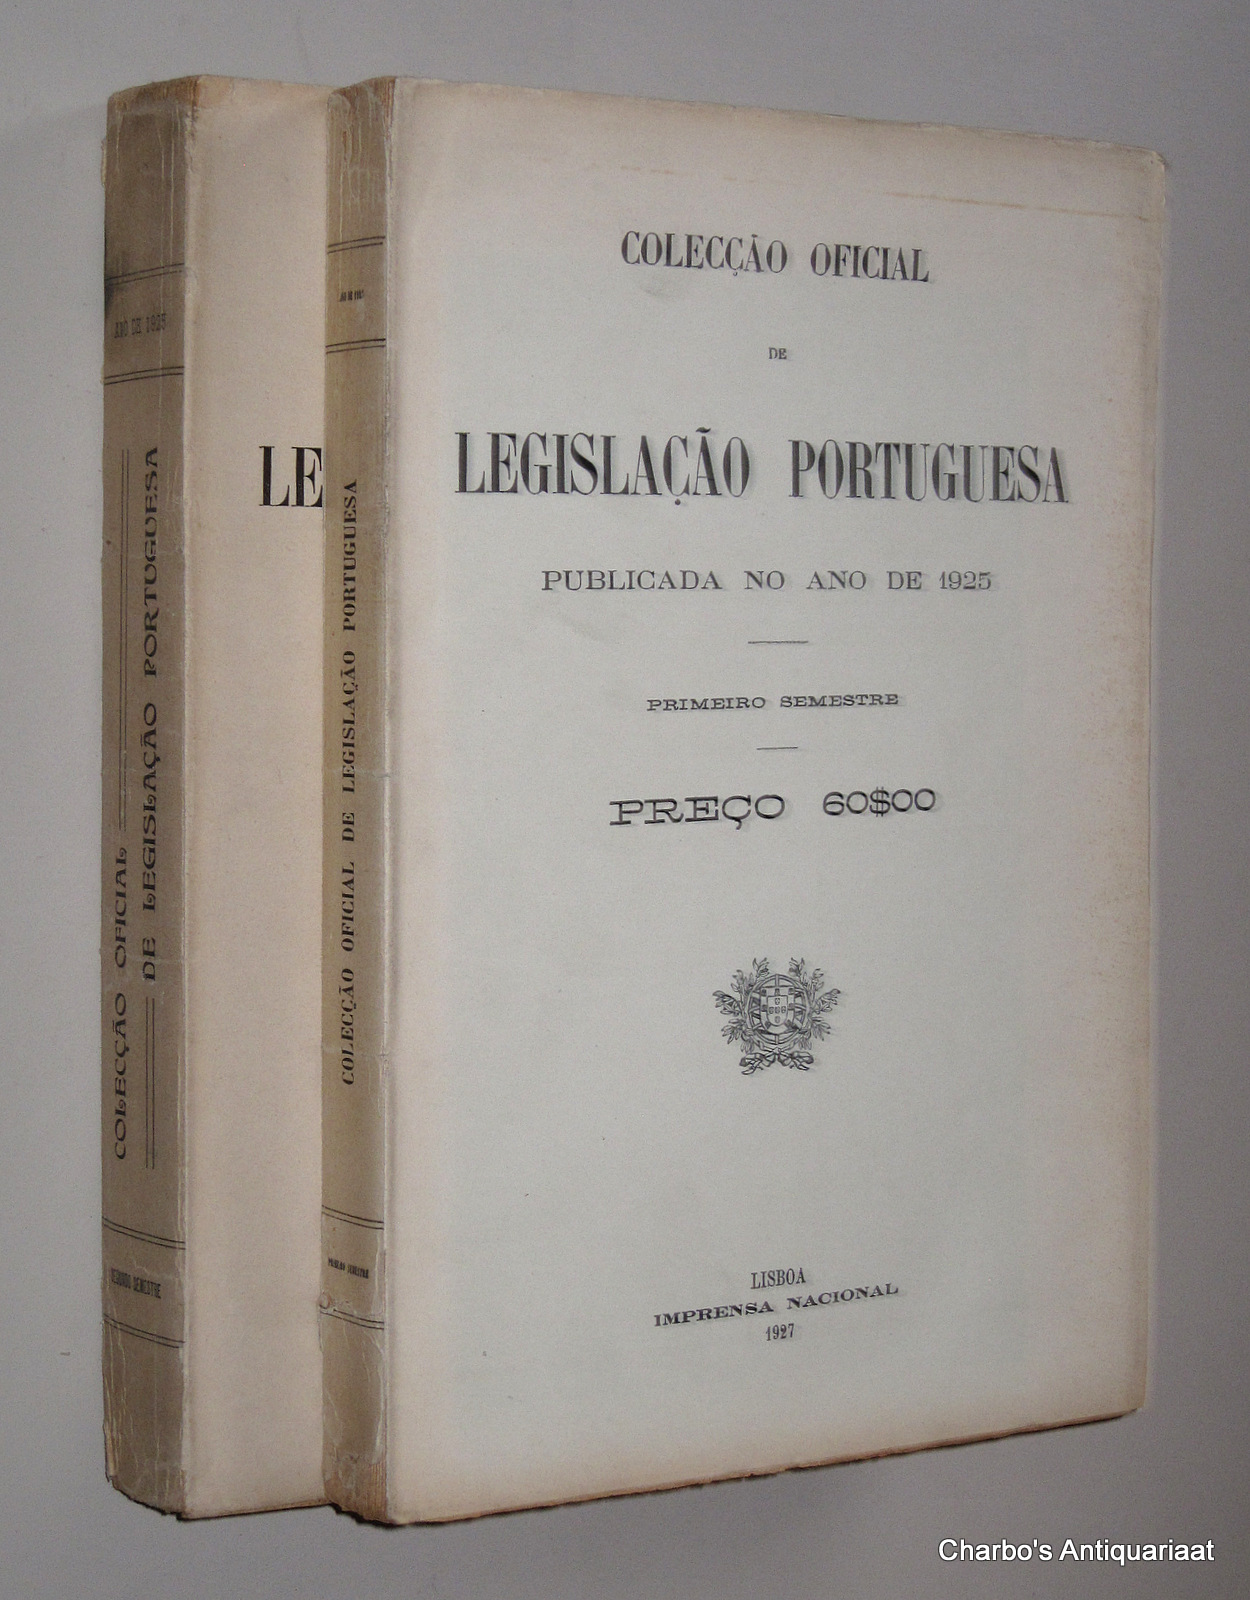 N/A, -  Coleco oficial de legislao portuguesa, publicada no ano de 1925. Primeiro & segundo semestre.